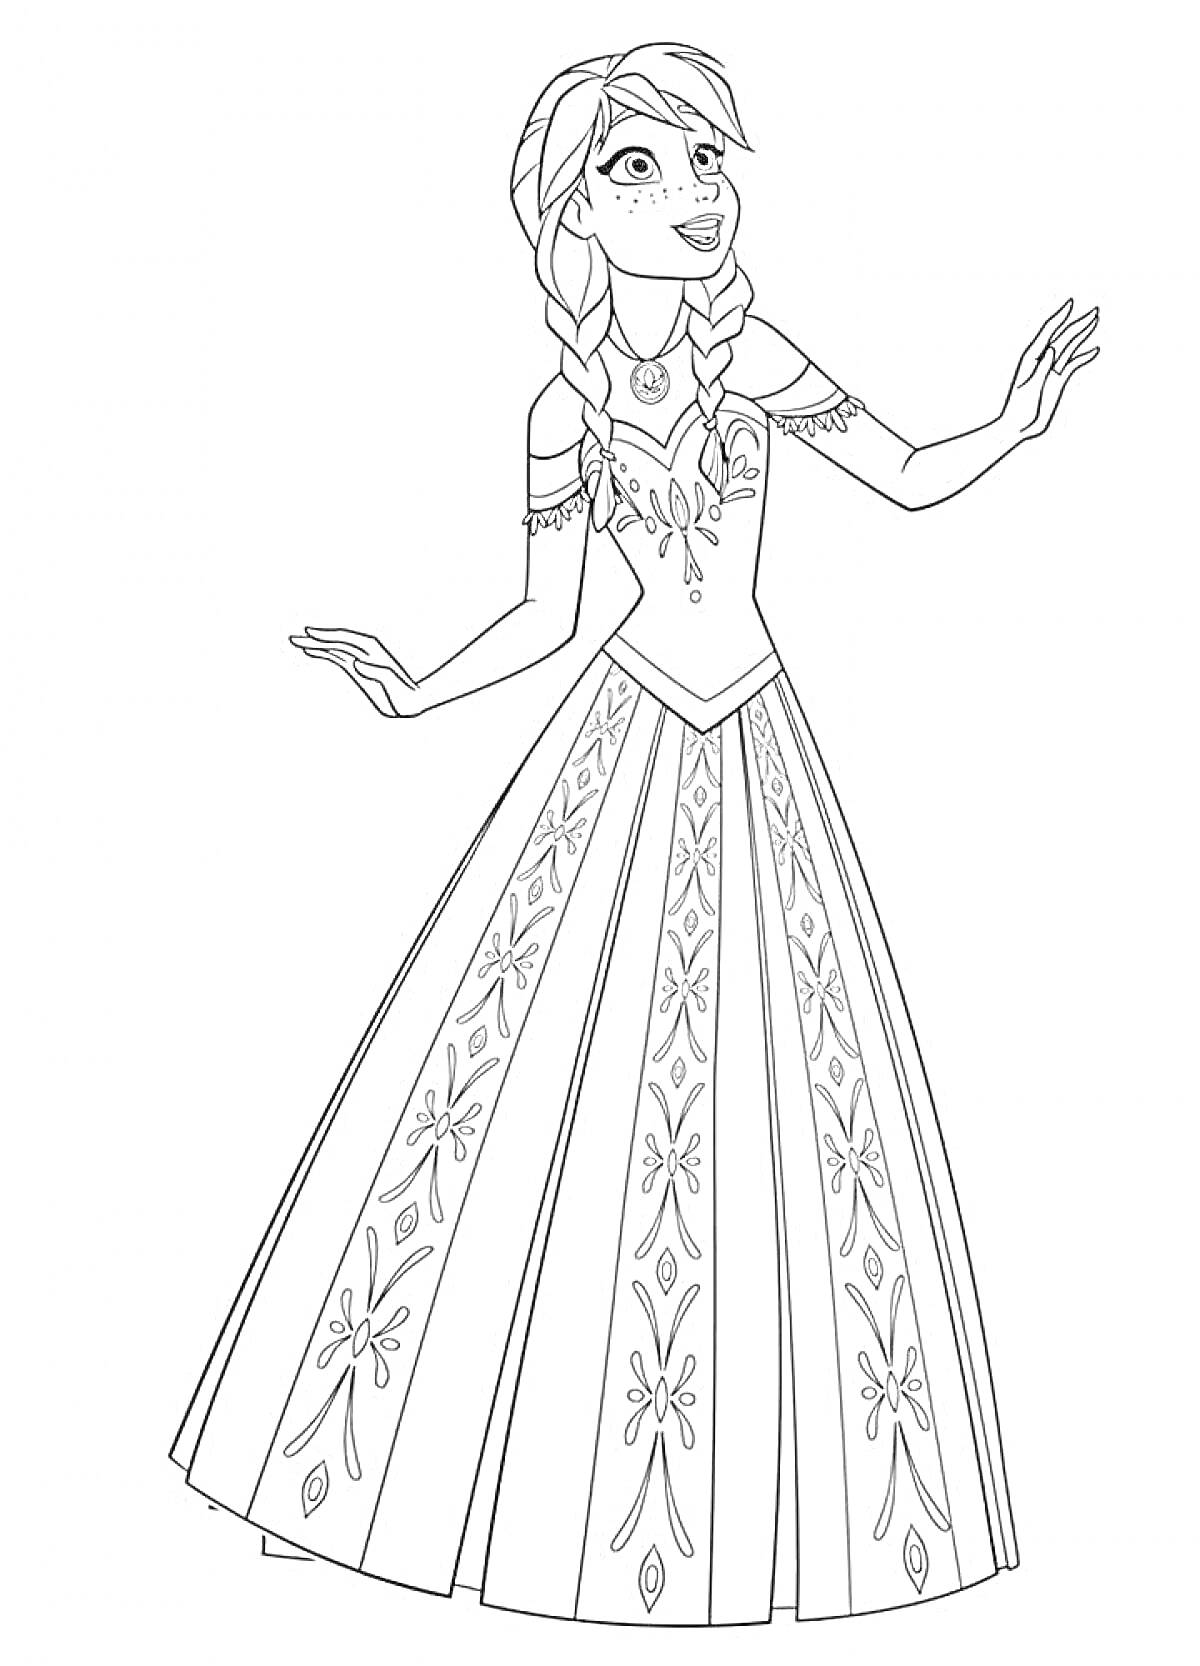 Раскраска Девушка с косами в длинном платье с узорами и украшением на шее